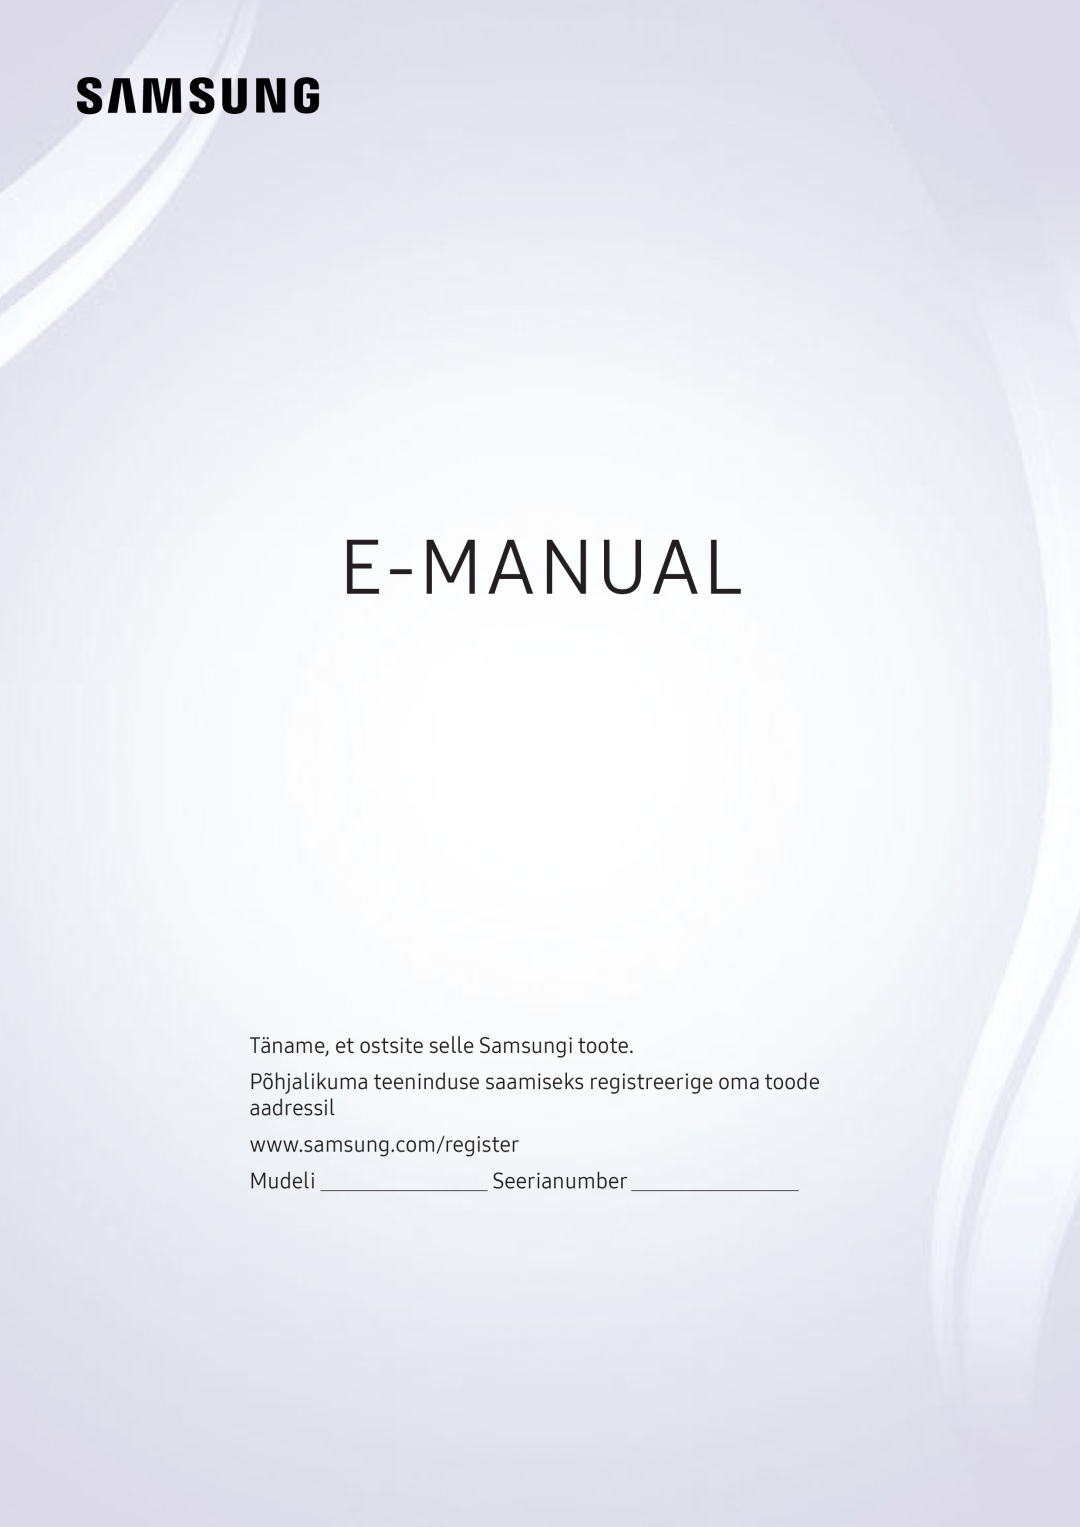 Samsung UE49KS7090UXZG, UE43KS7590UXZG manual E-Manual, Köszönjük, hogy Samsung terméket vásárolt, ModellSorozatszám 